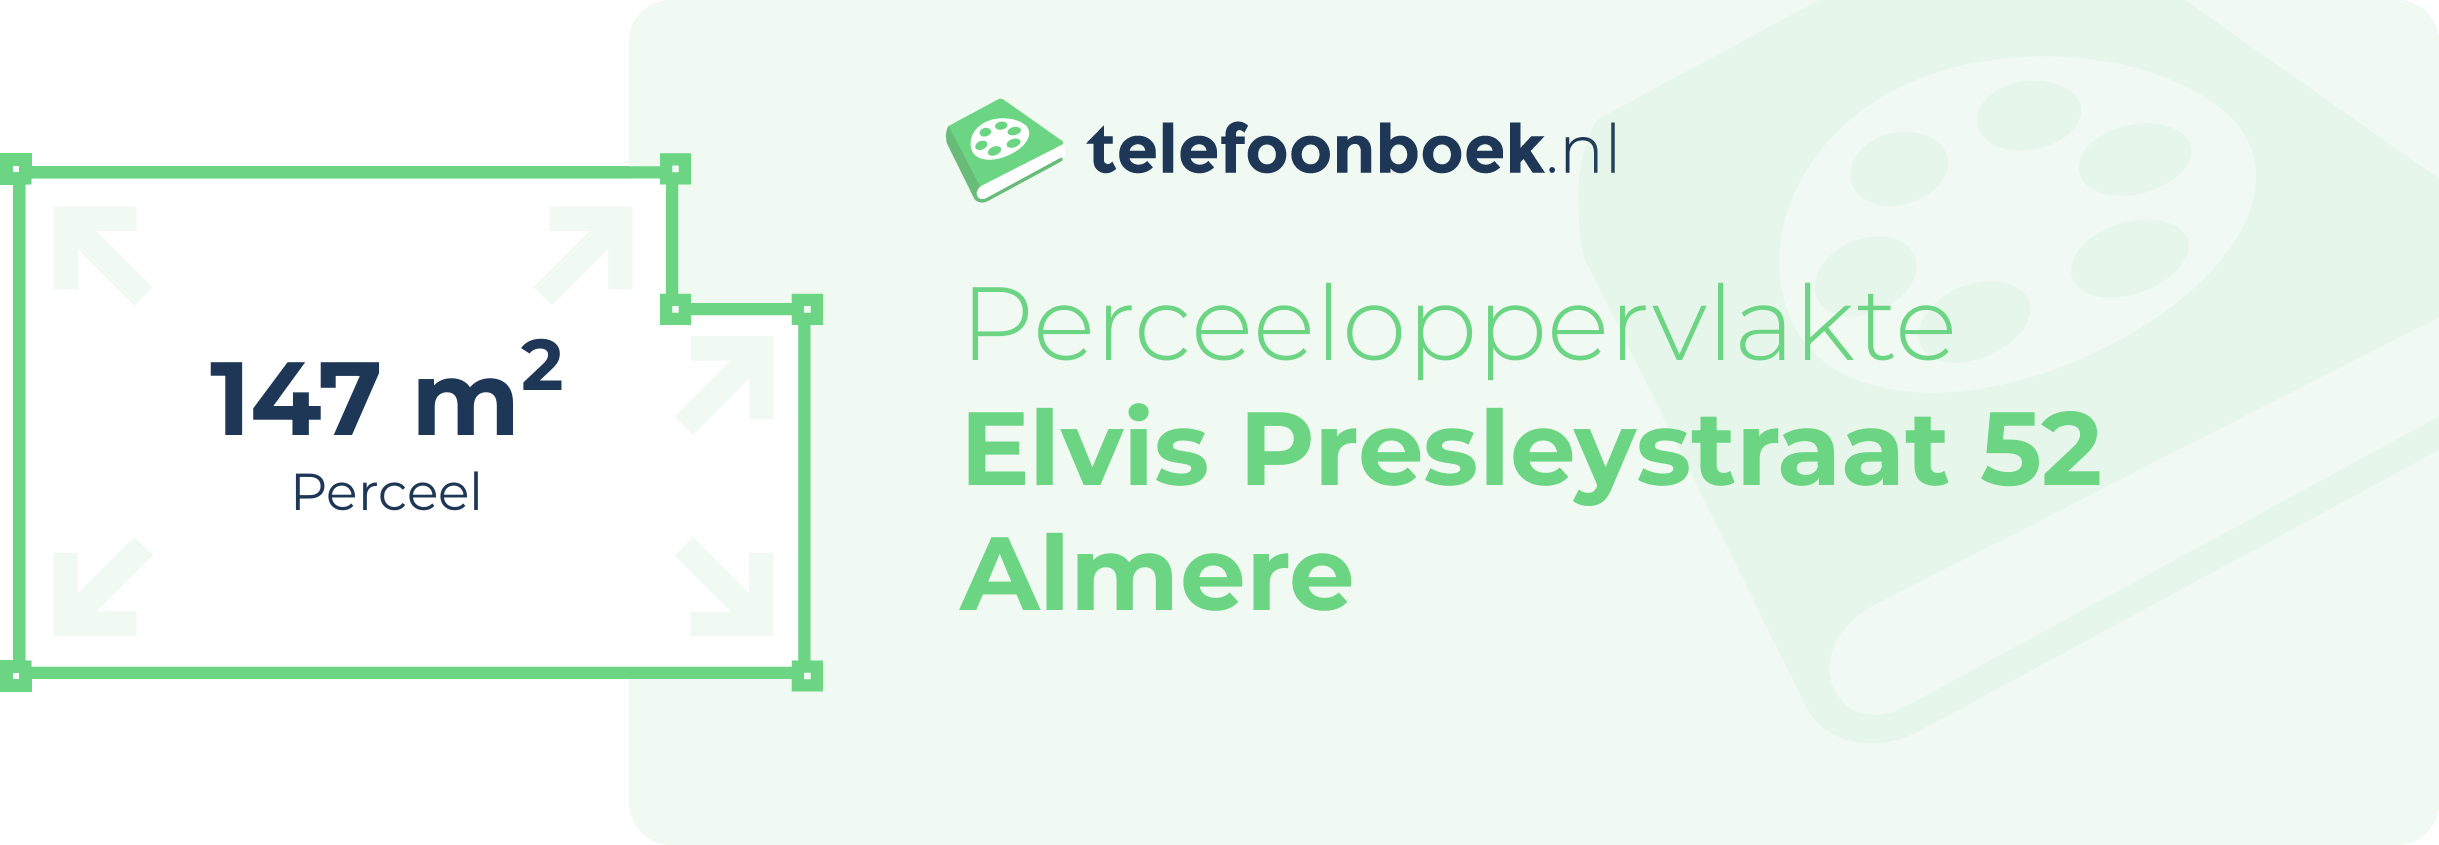 Perceeloppervlakte Elvis Presleystraat 52 Almere